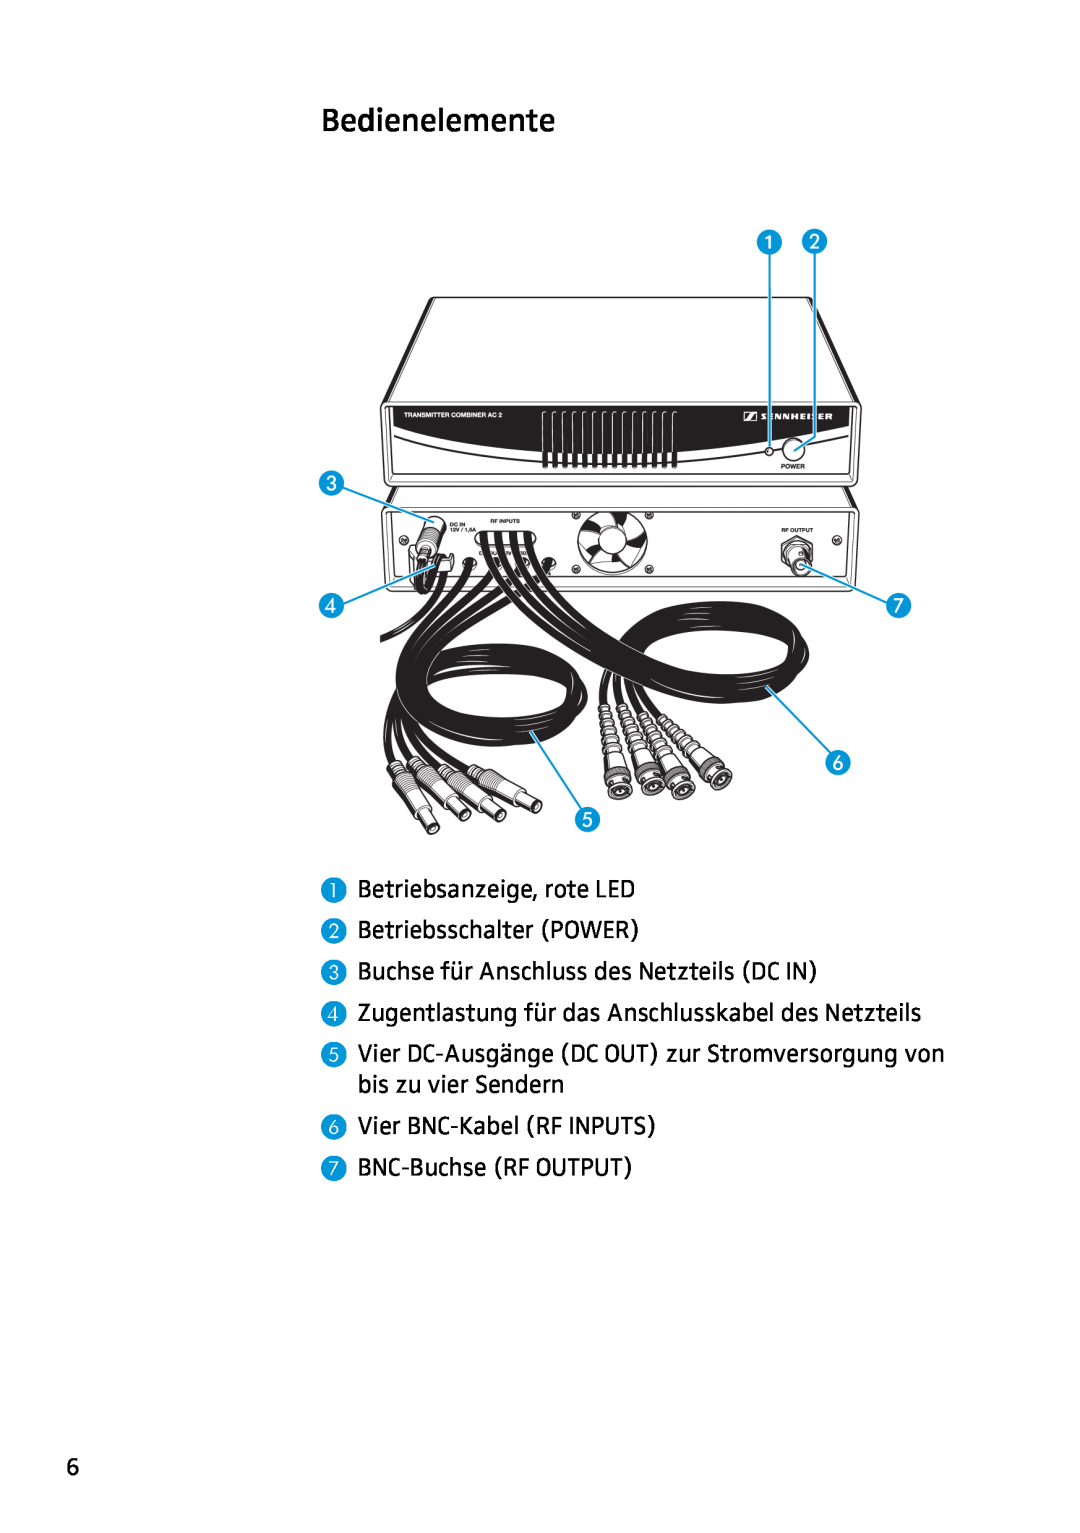 Sennheiser AC2 manual Bedienelemente, Betriebsanzeige, rote LED Betriebsschalter POWER 